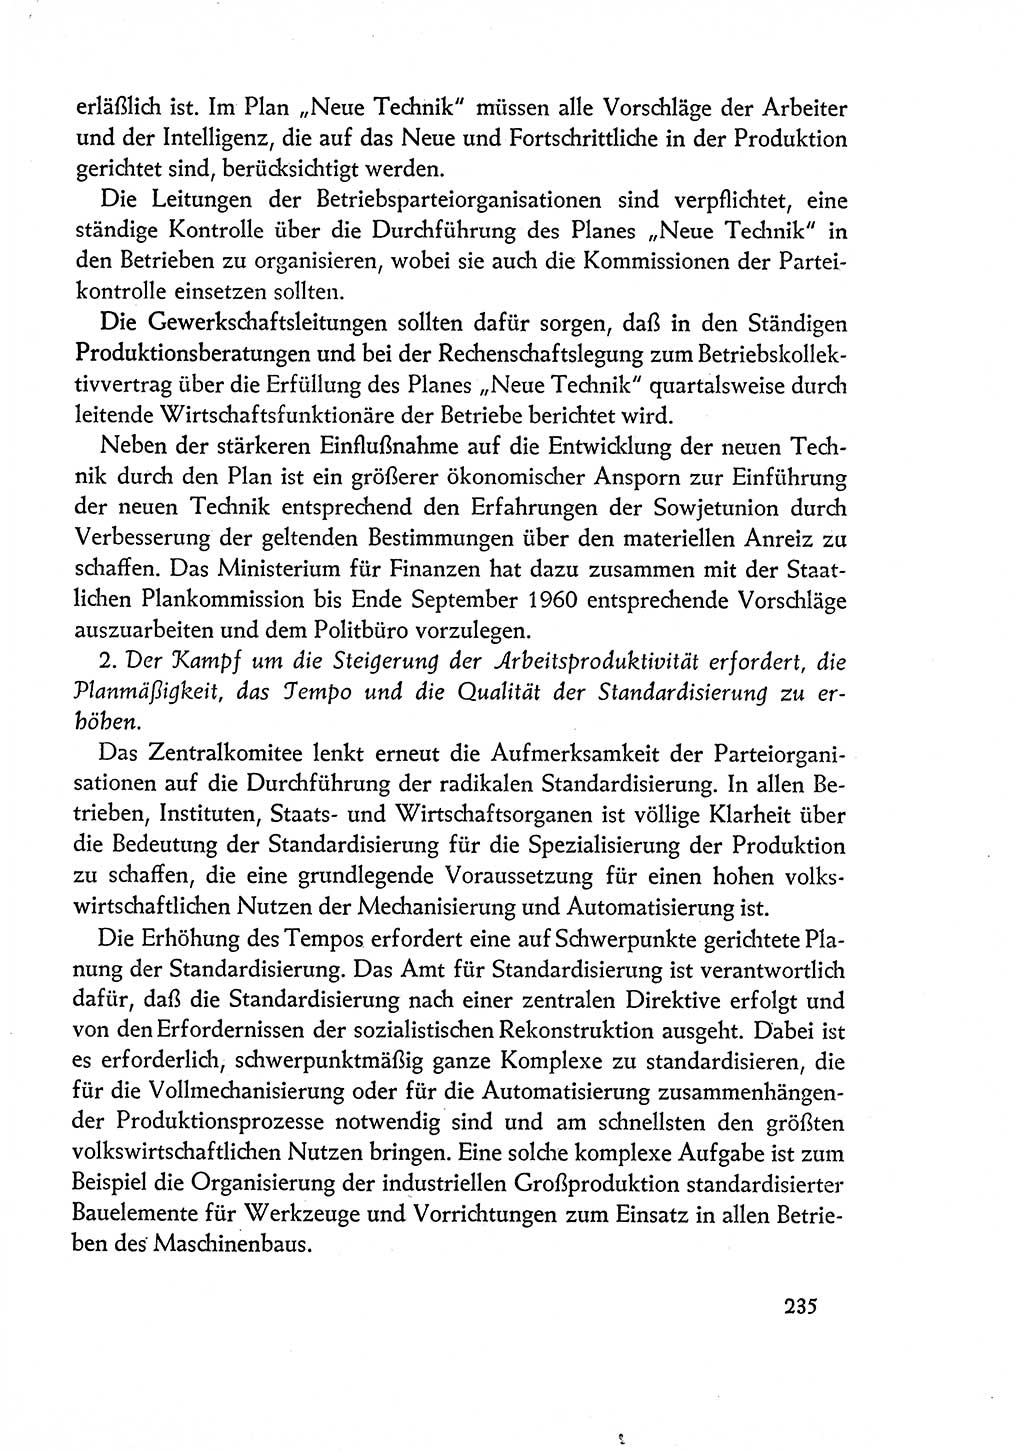 Dokumente der Sozialistischen Einheitspartei Deutschlands (SED) [Deutsche Demokratische Republik (DDR)] 1960-1961, Seite 235 (Dok. SED DDR 1960-1961, S. 235)